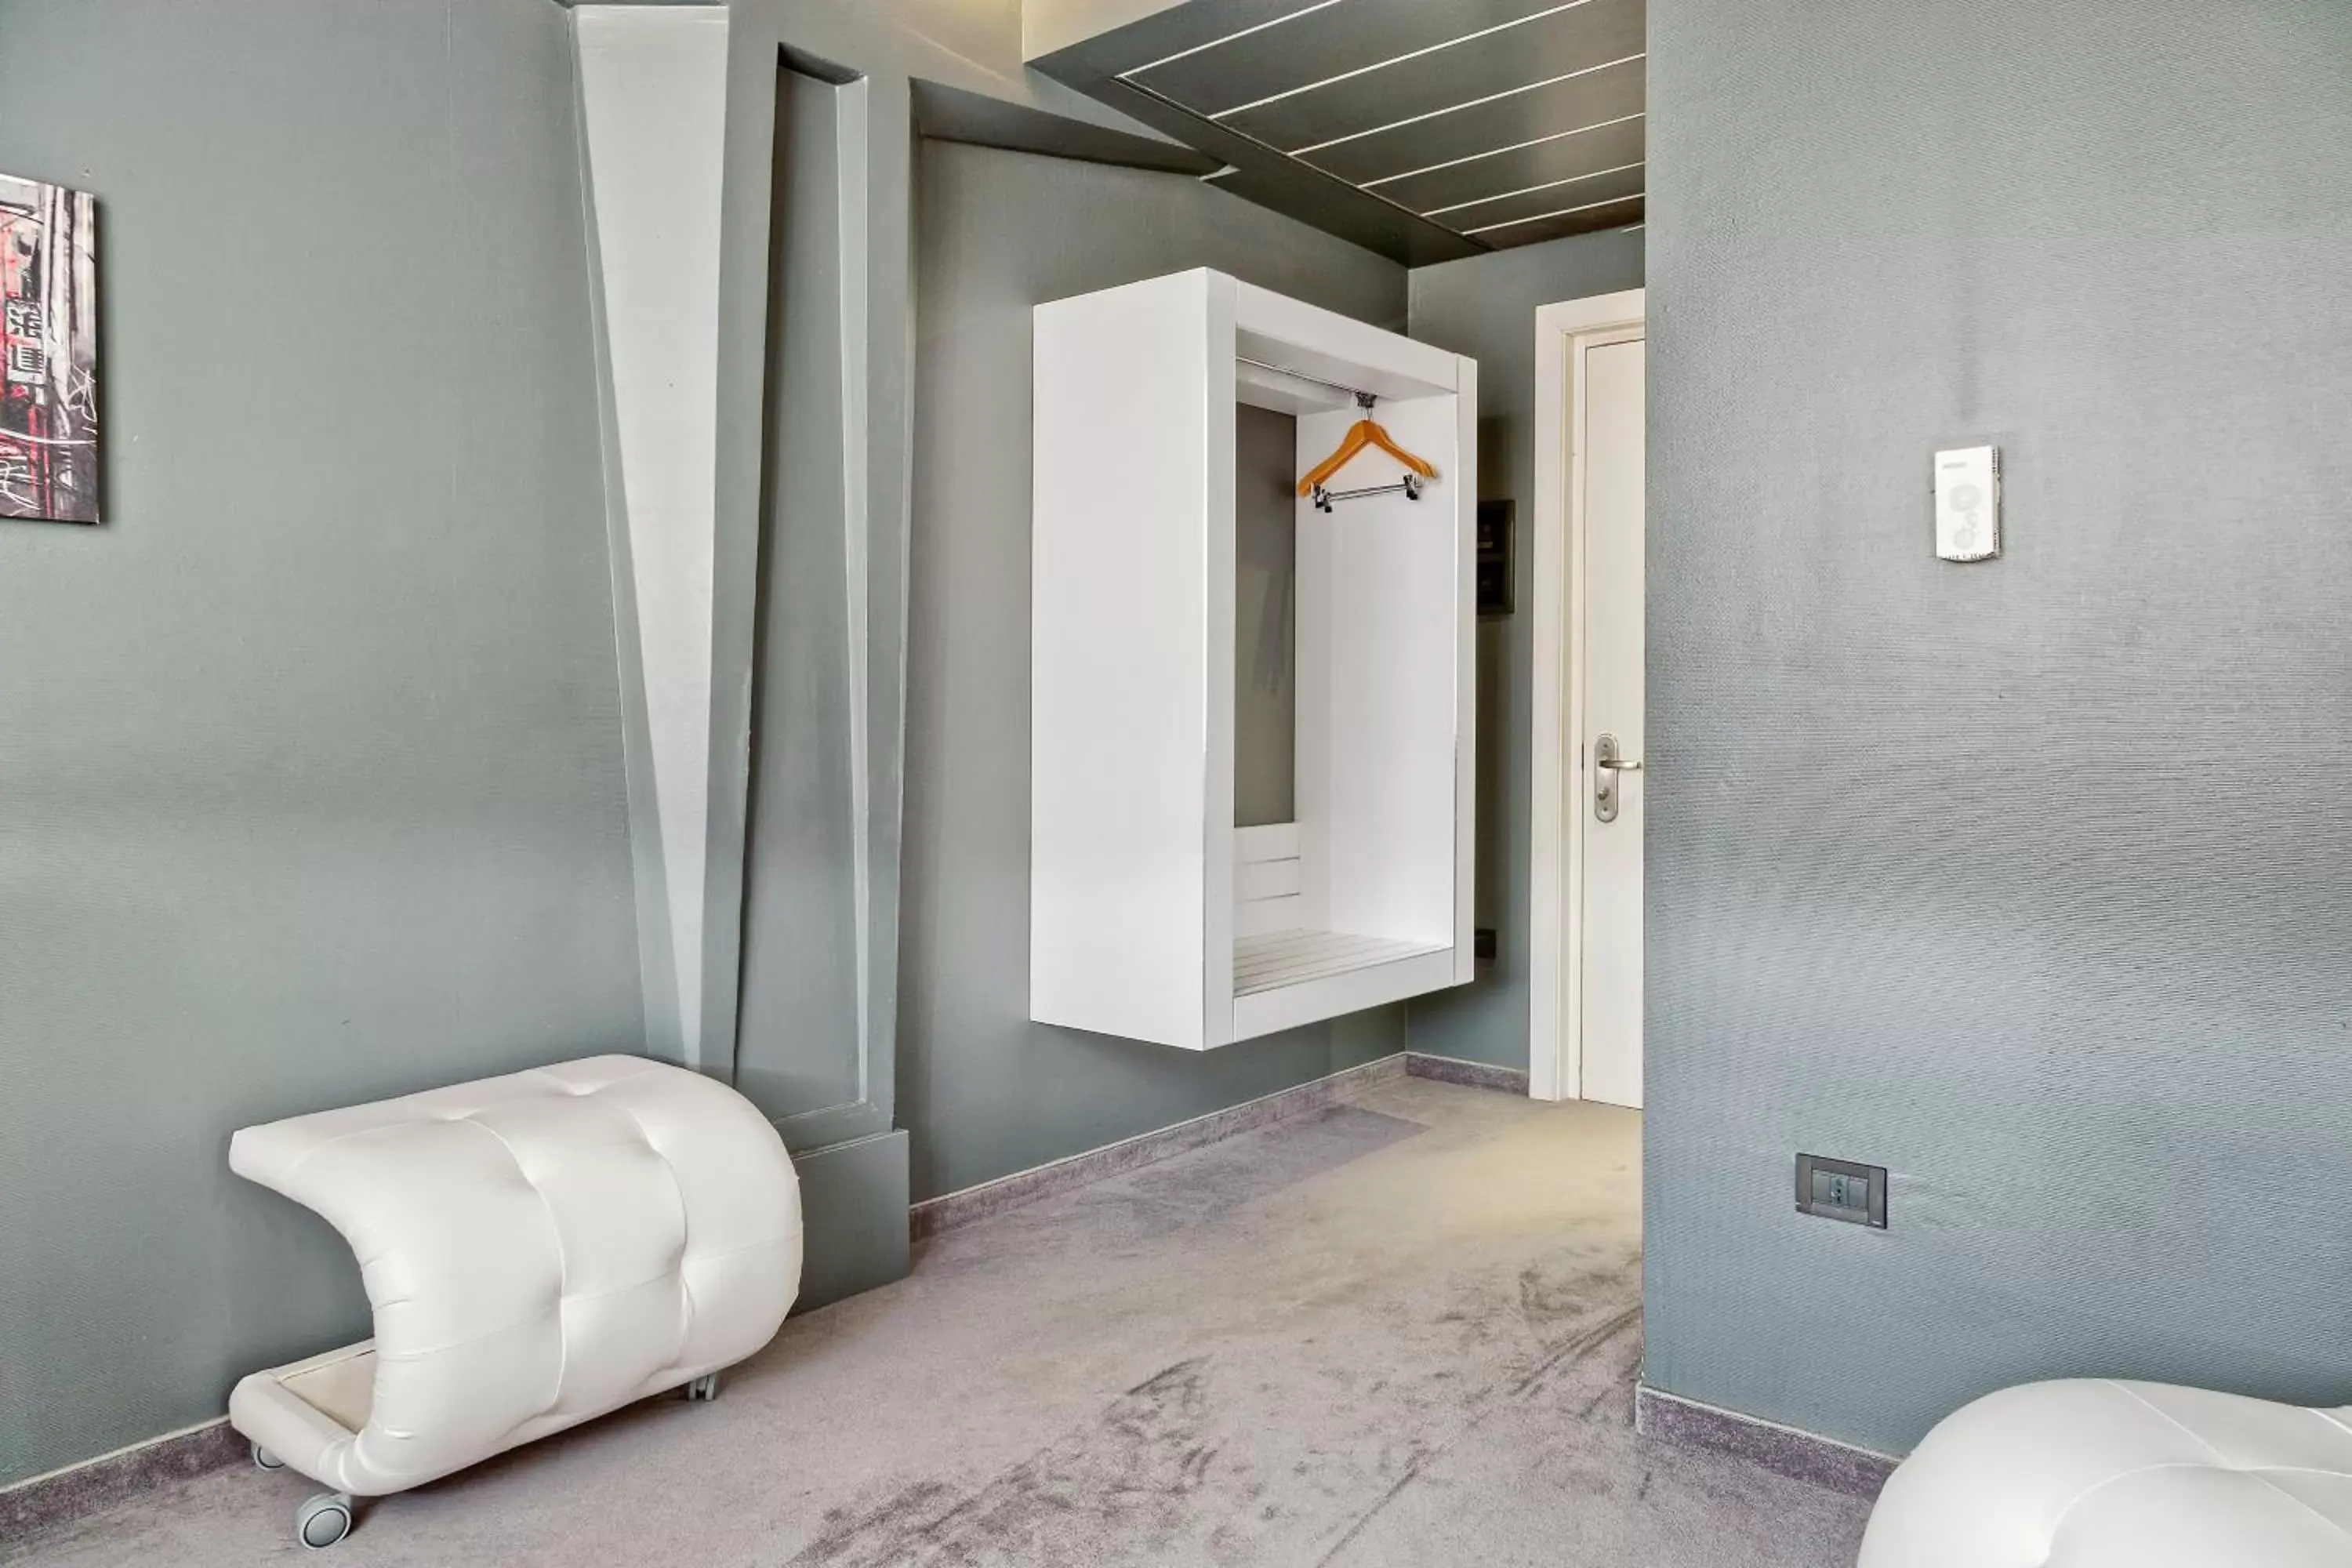 Bedroom, Bathroom in Italiana Hotels Florence